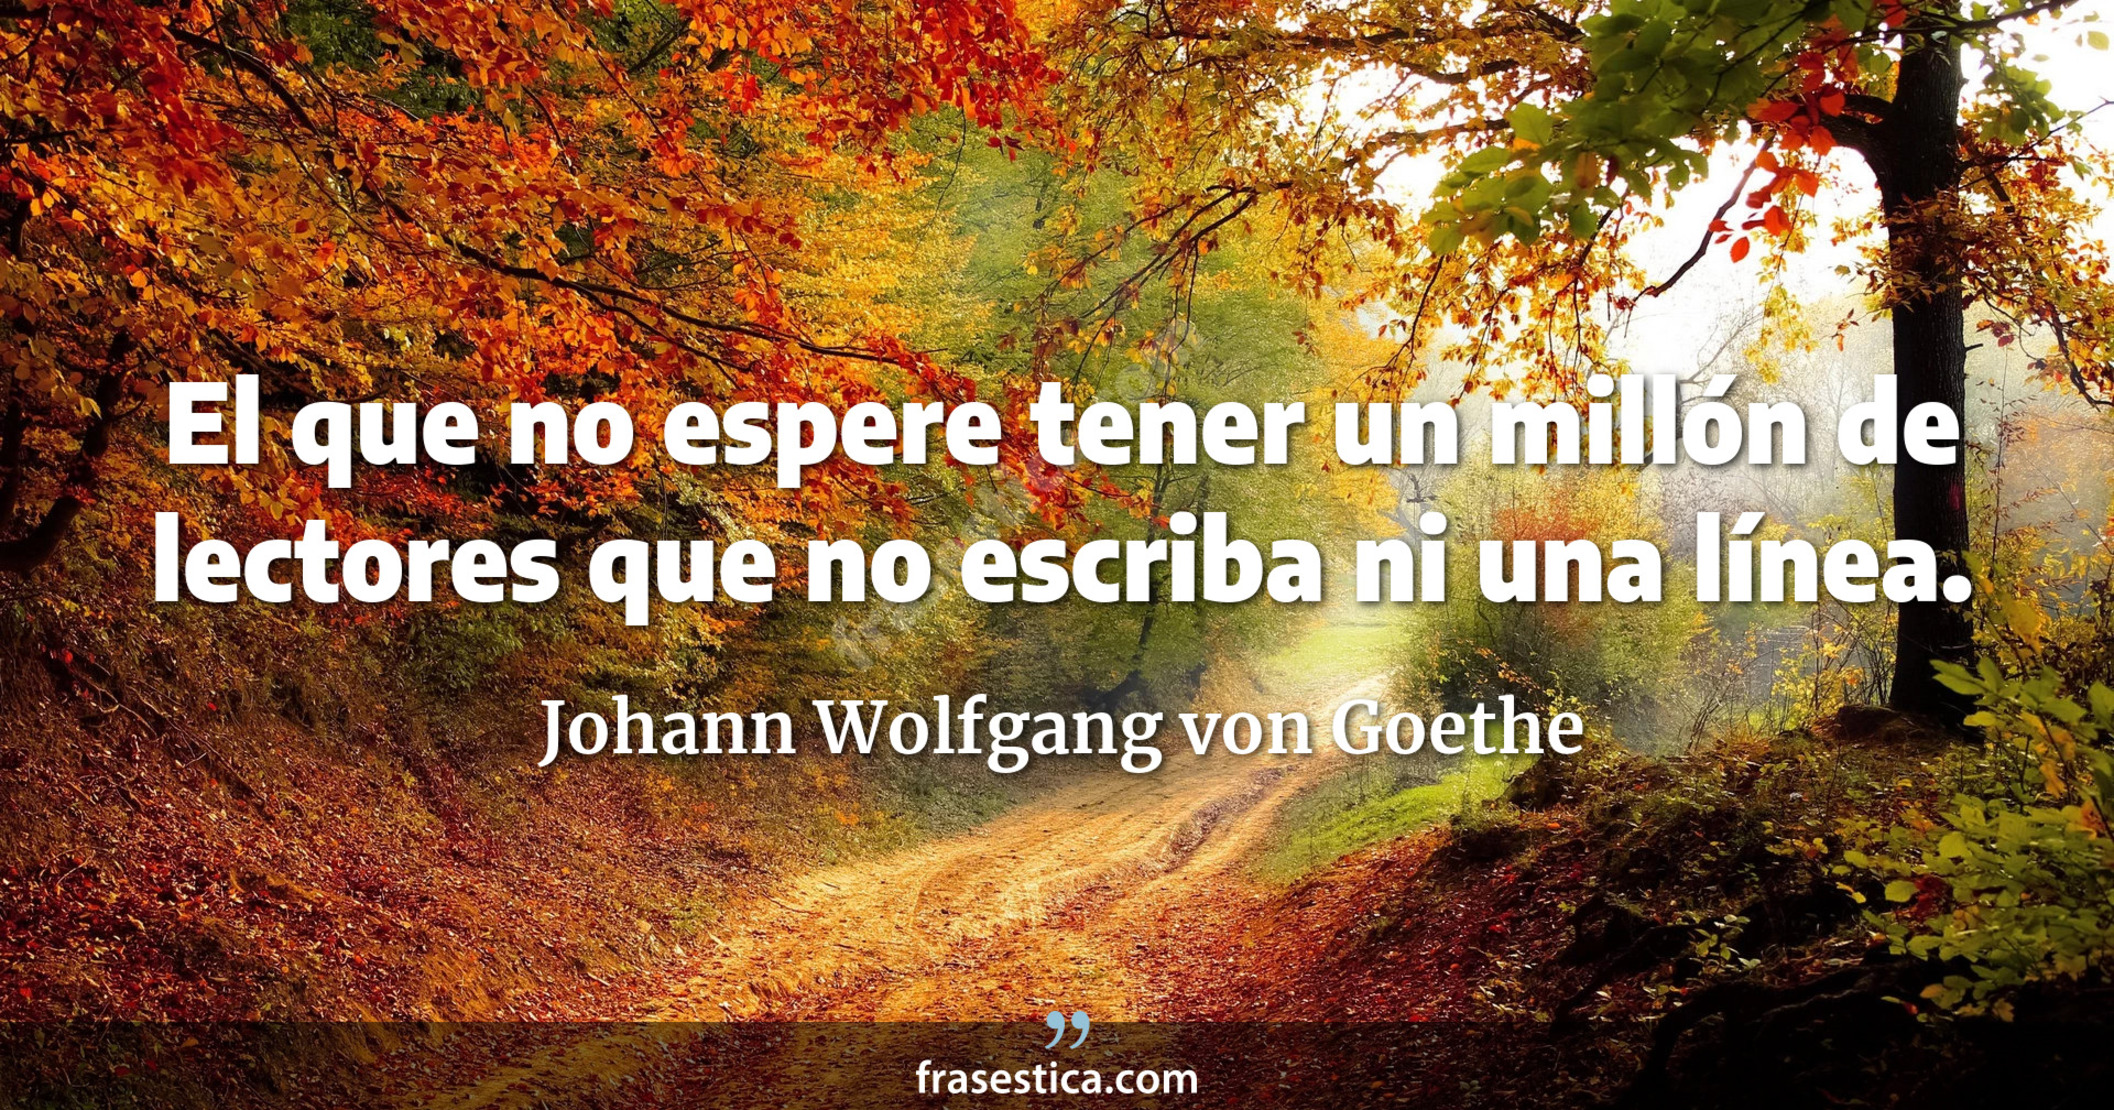 El que no espere tener un millón de lectores que no escriba ni una línea. - Johann Wolfgang von Goethe